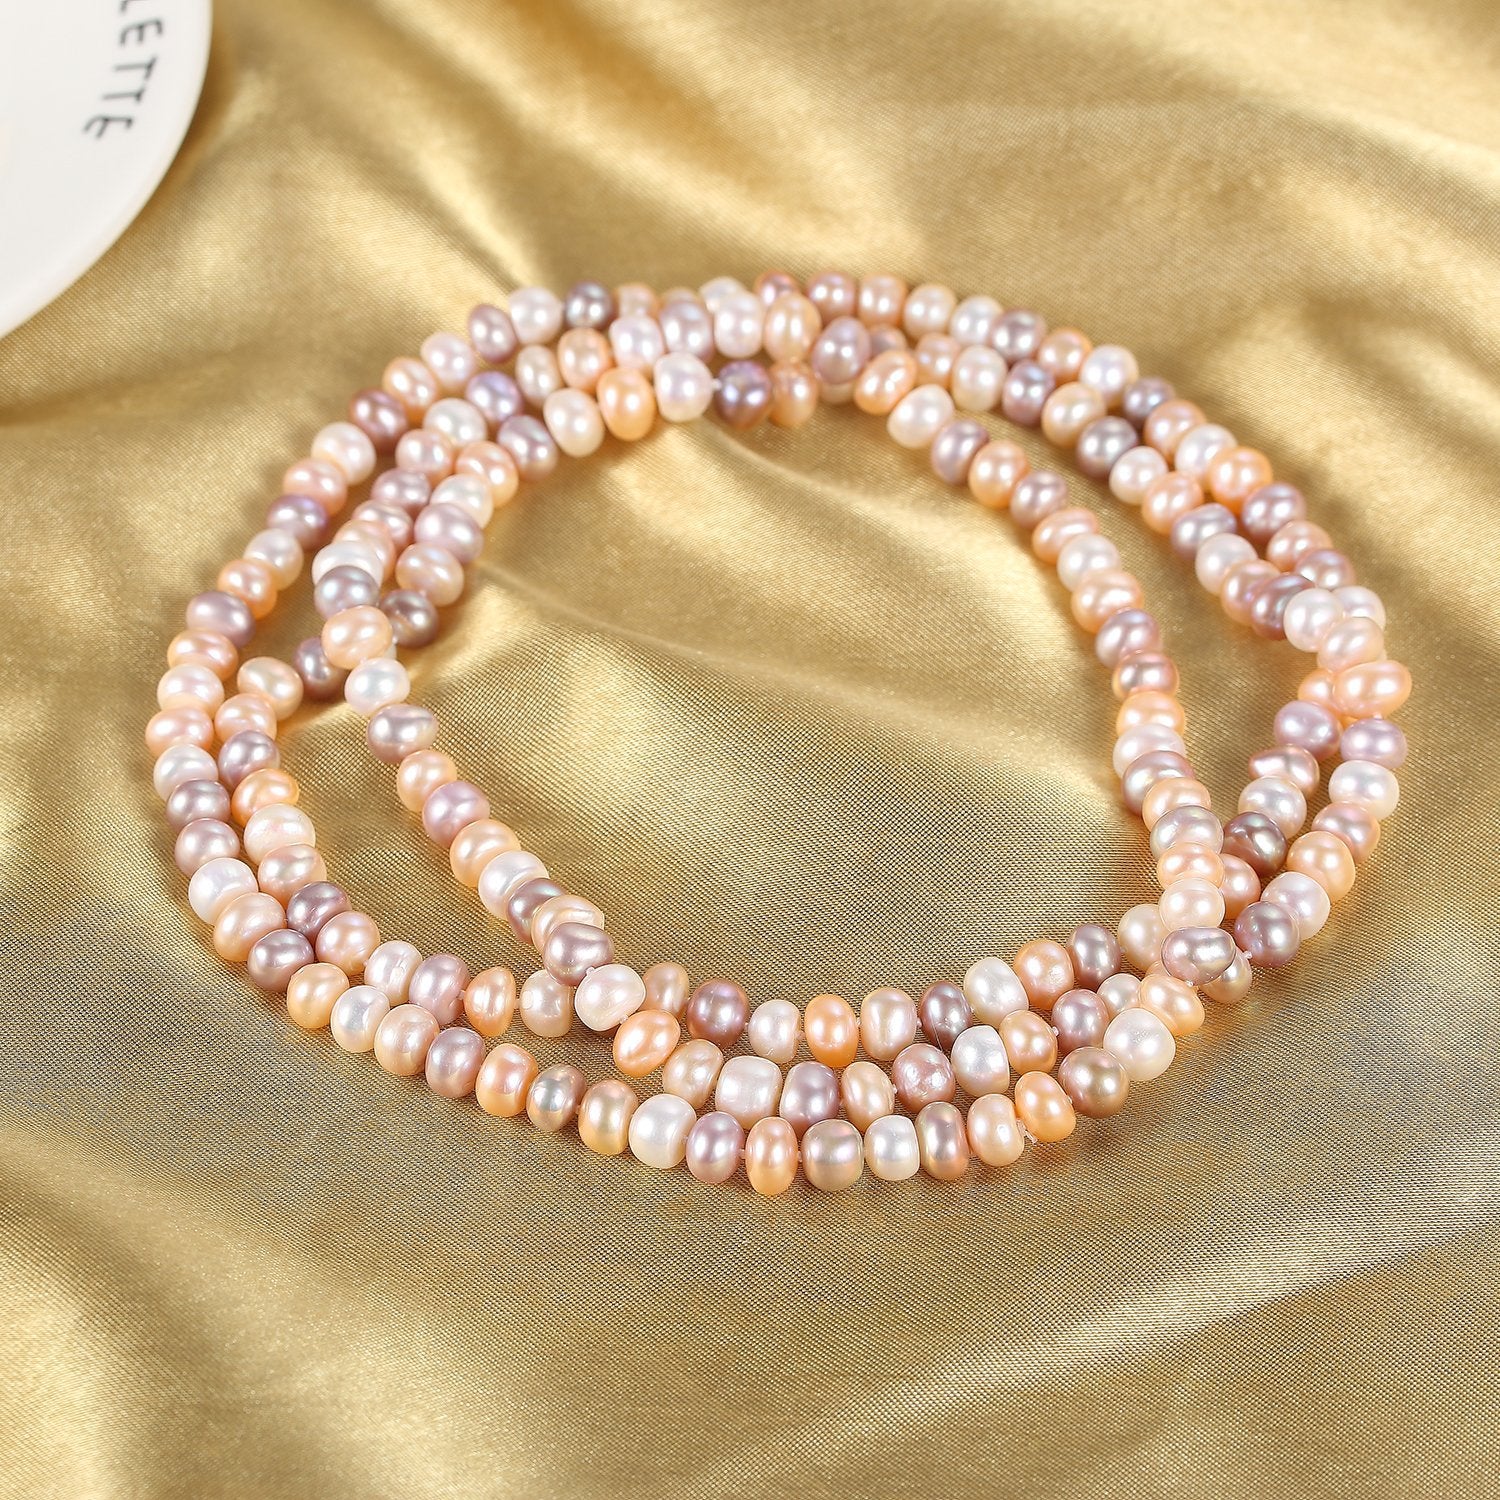 Virginia Tso Mixed Pearl Necklace - 18